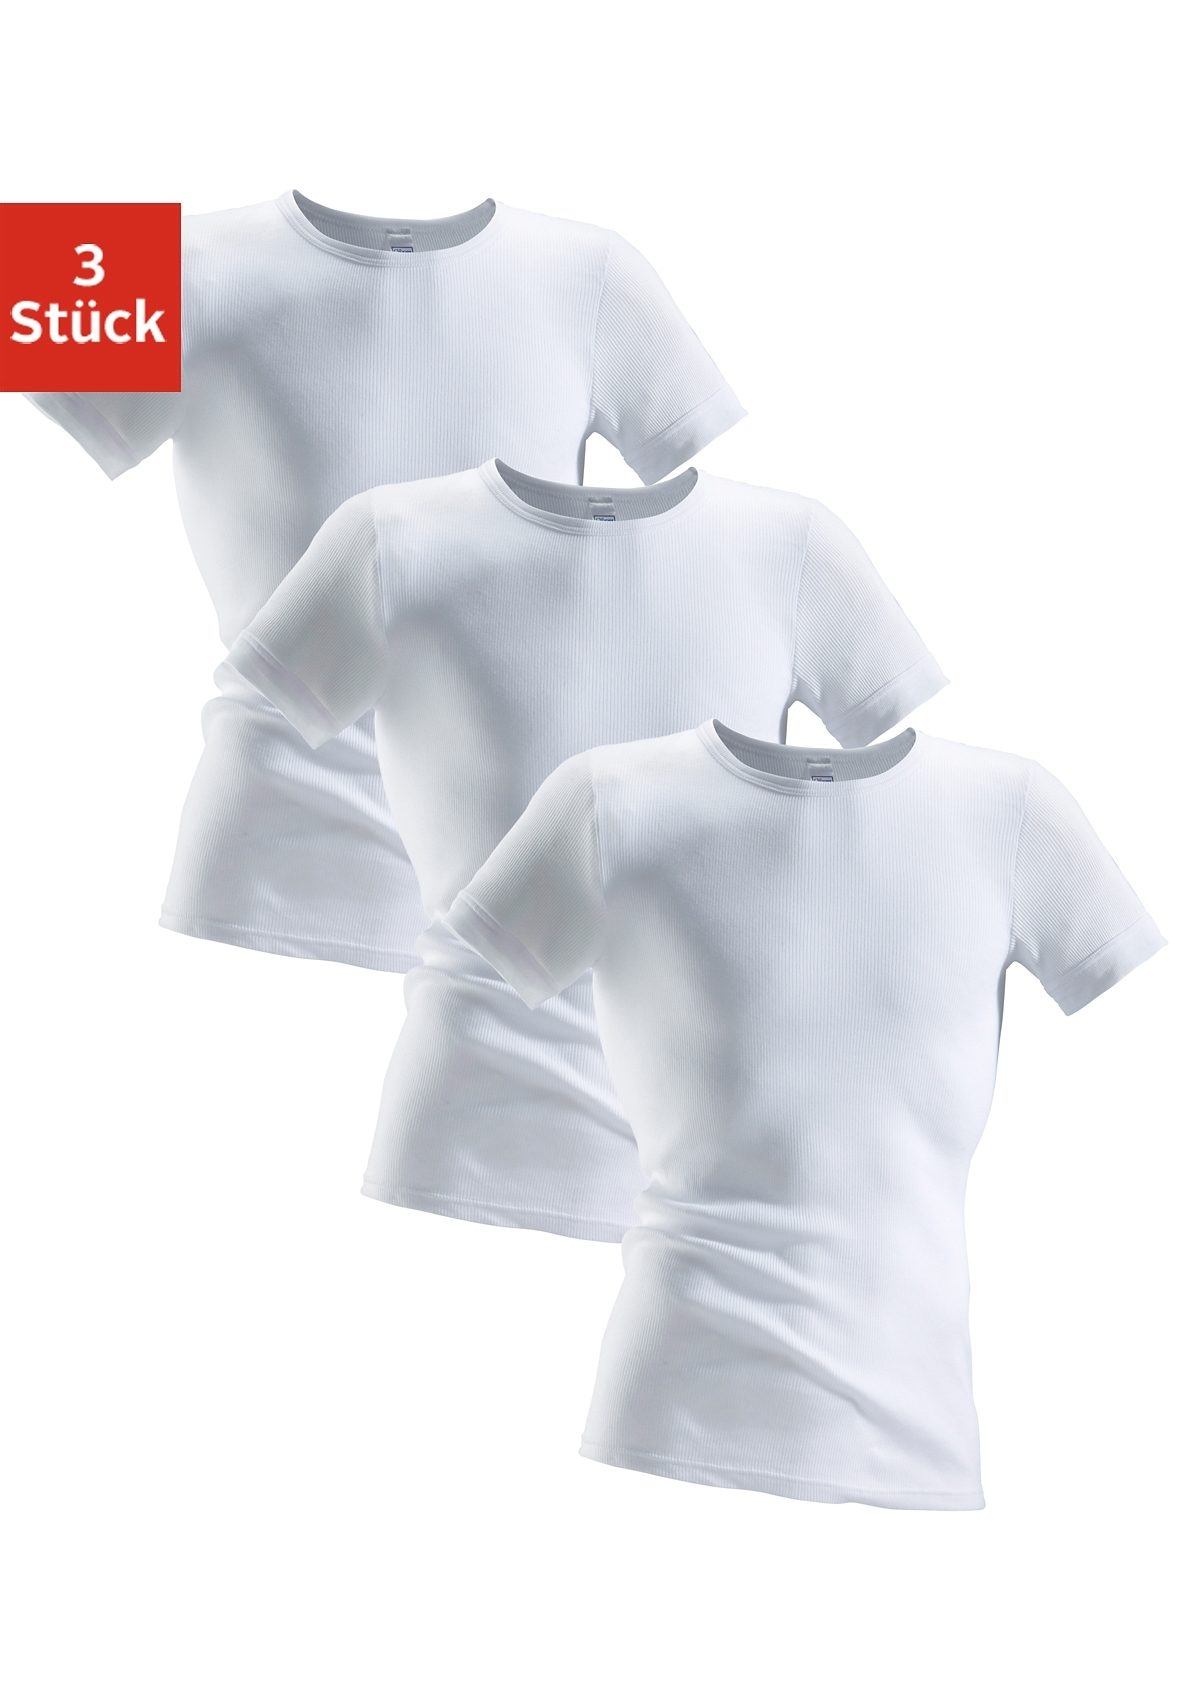 clipper unterhemd, (3 st.), aus doppelripp, t-shirt, unterziehshirt, kurzarm t-shirt weiss